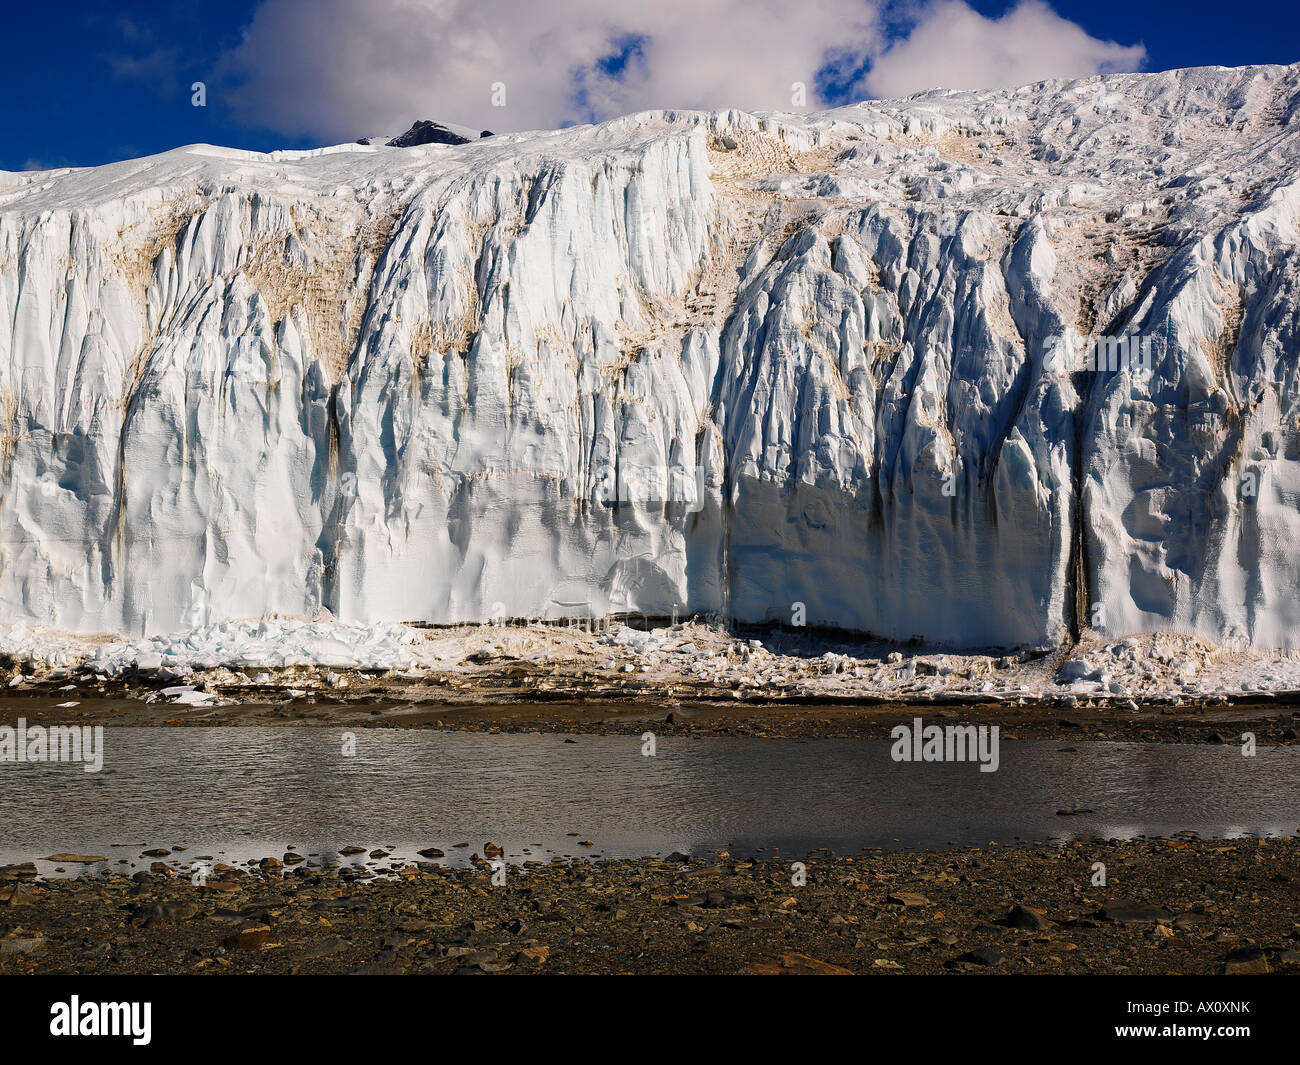 Canada Glacier, Taylor Valley, McMurdo Dry Valleys, Antarctica Stock Photo